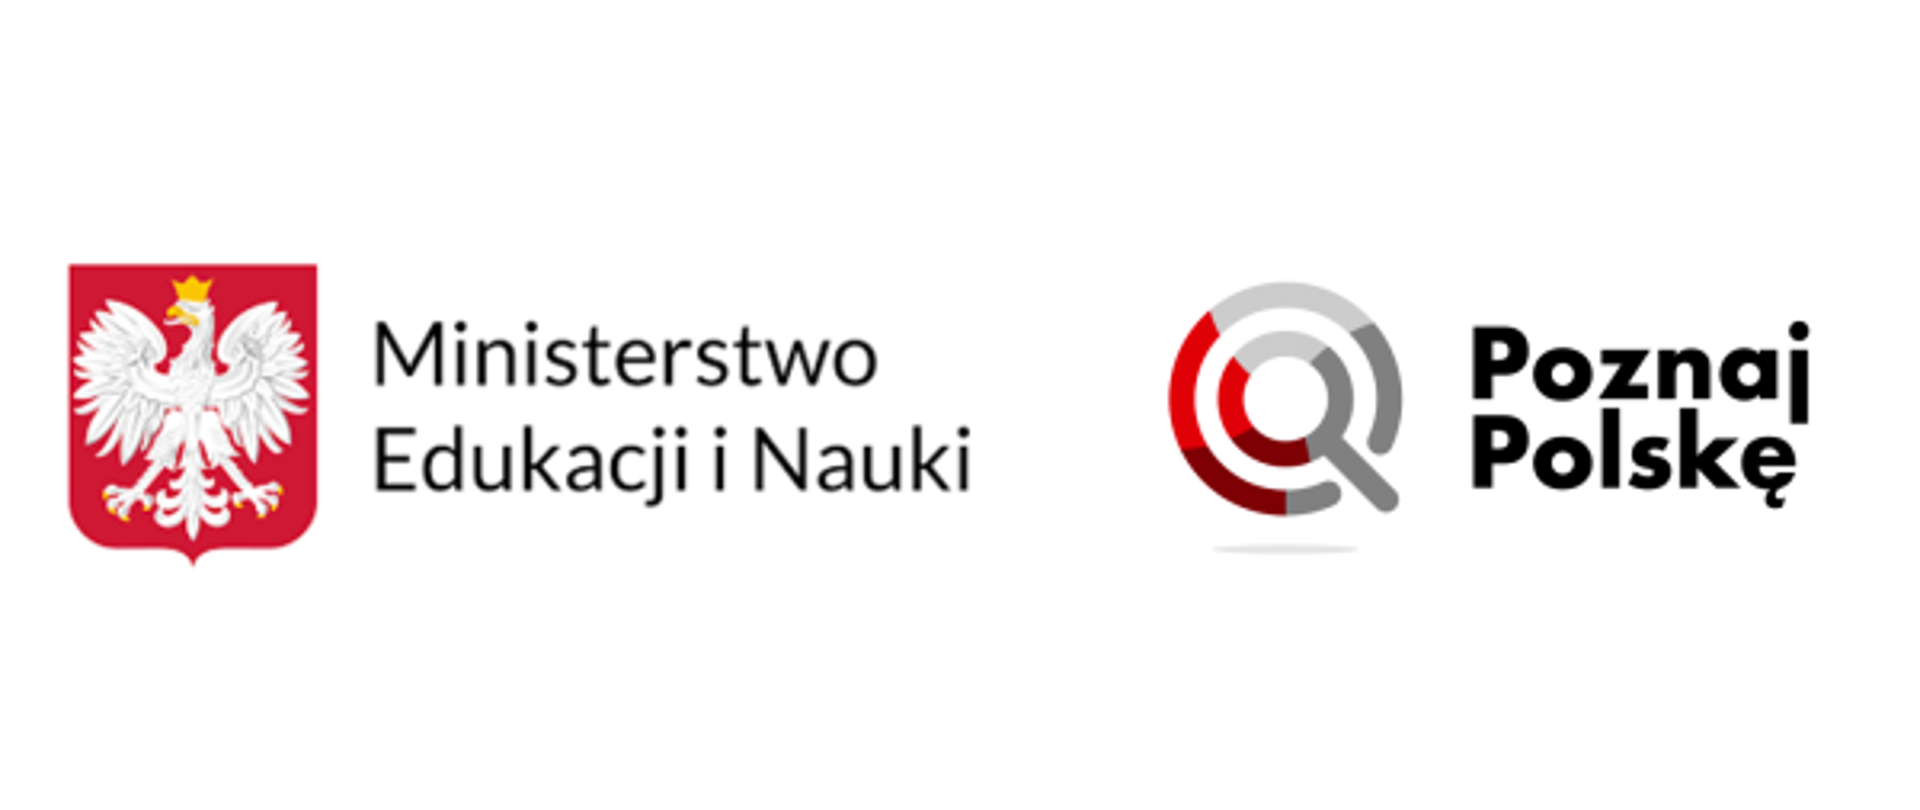 Logo Ministerstwa Edukacji i Nauki i przedsięwzięcia "Poznaj Polskę"